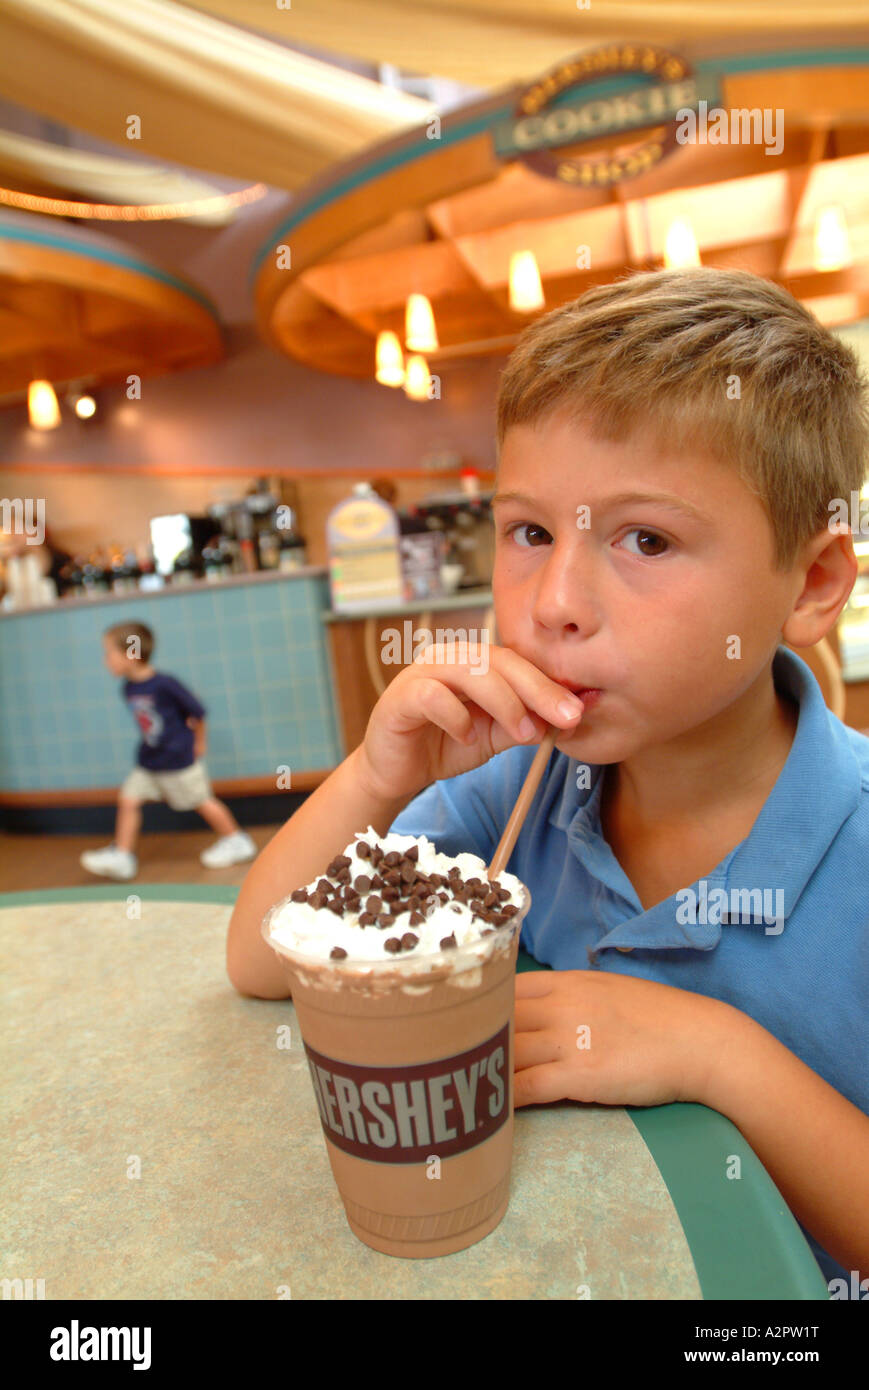 Un garçon sept 7 M. bénéficie d'une boisson glacée au chocolat Hershey Chocolate World s cafe Banque D'Images